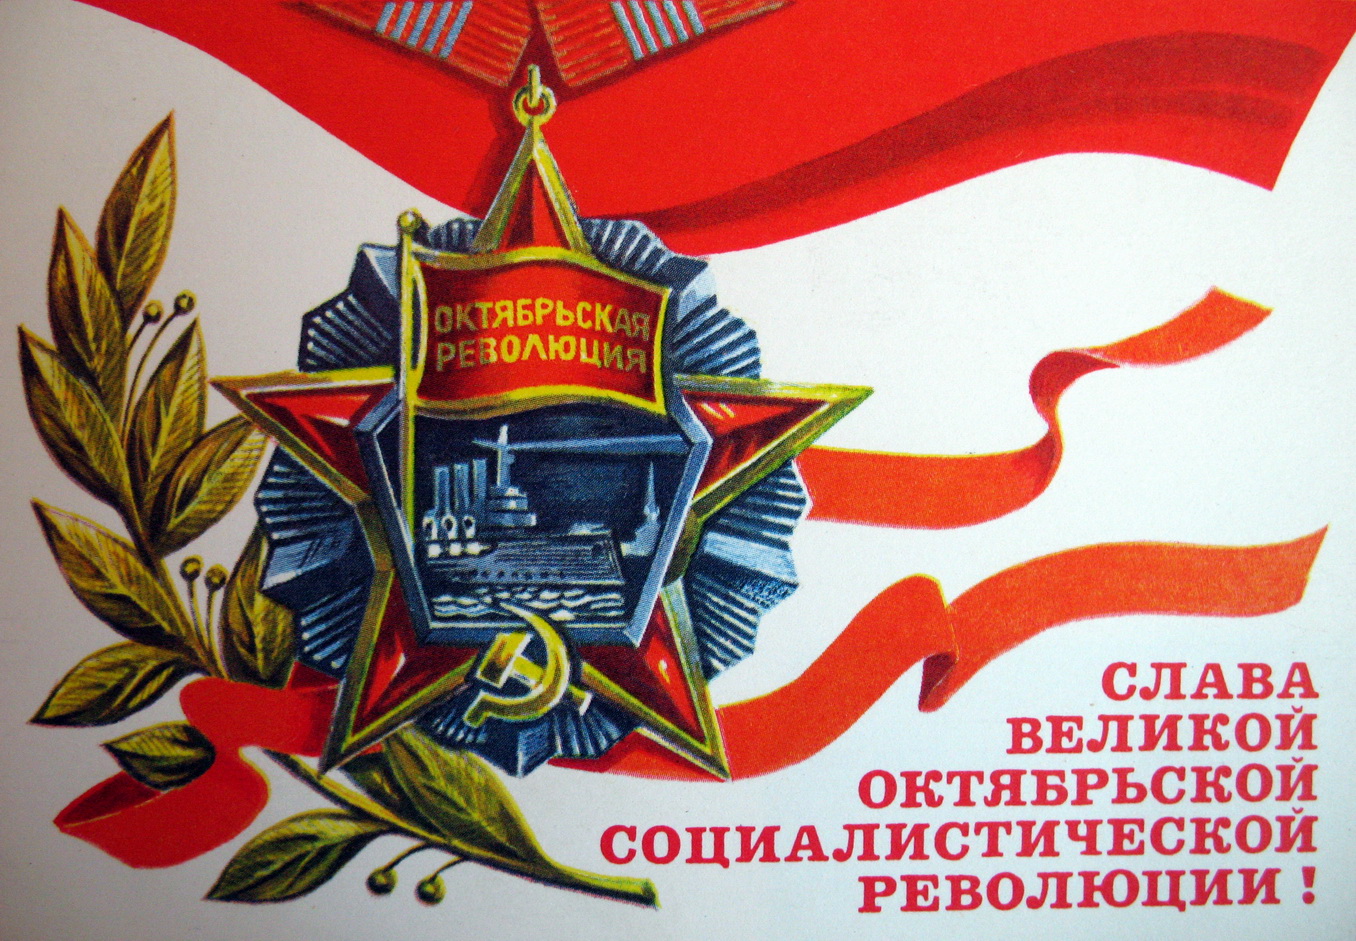 Поздравление С Днем Октябрьской Революции От Райисполкома